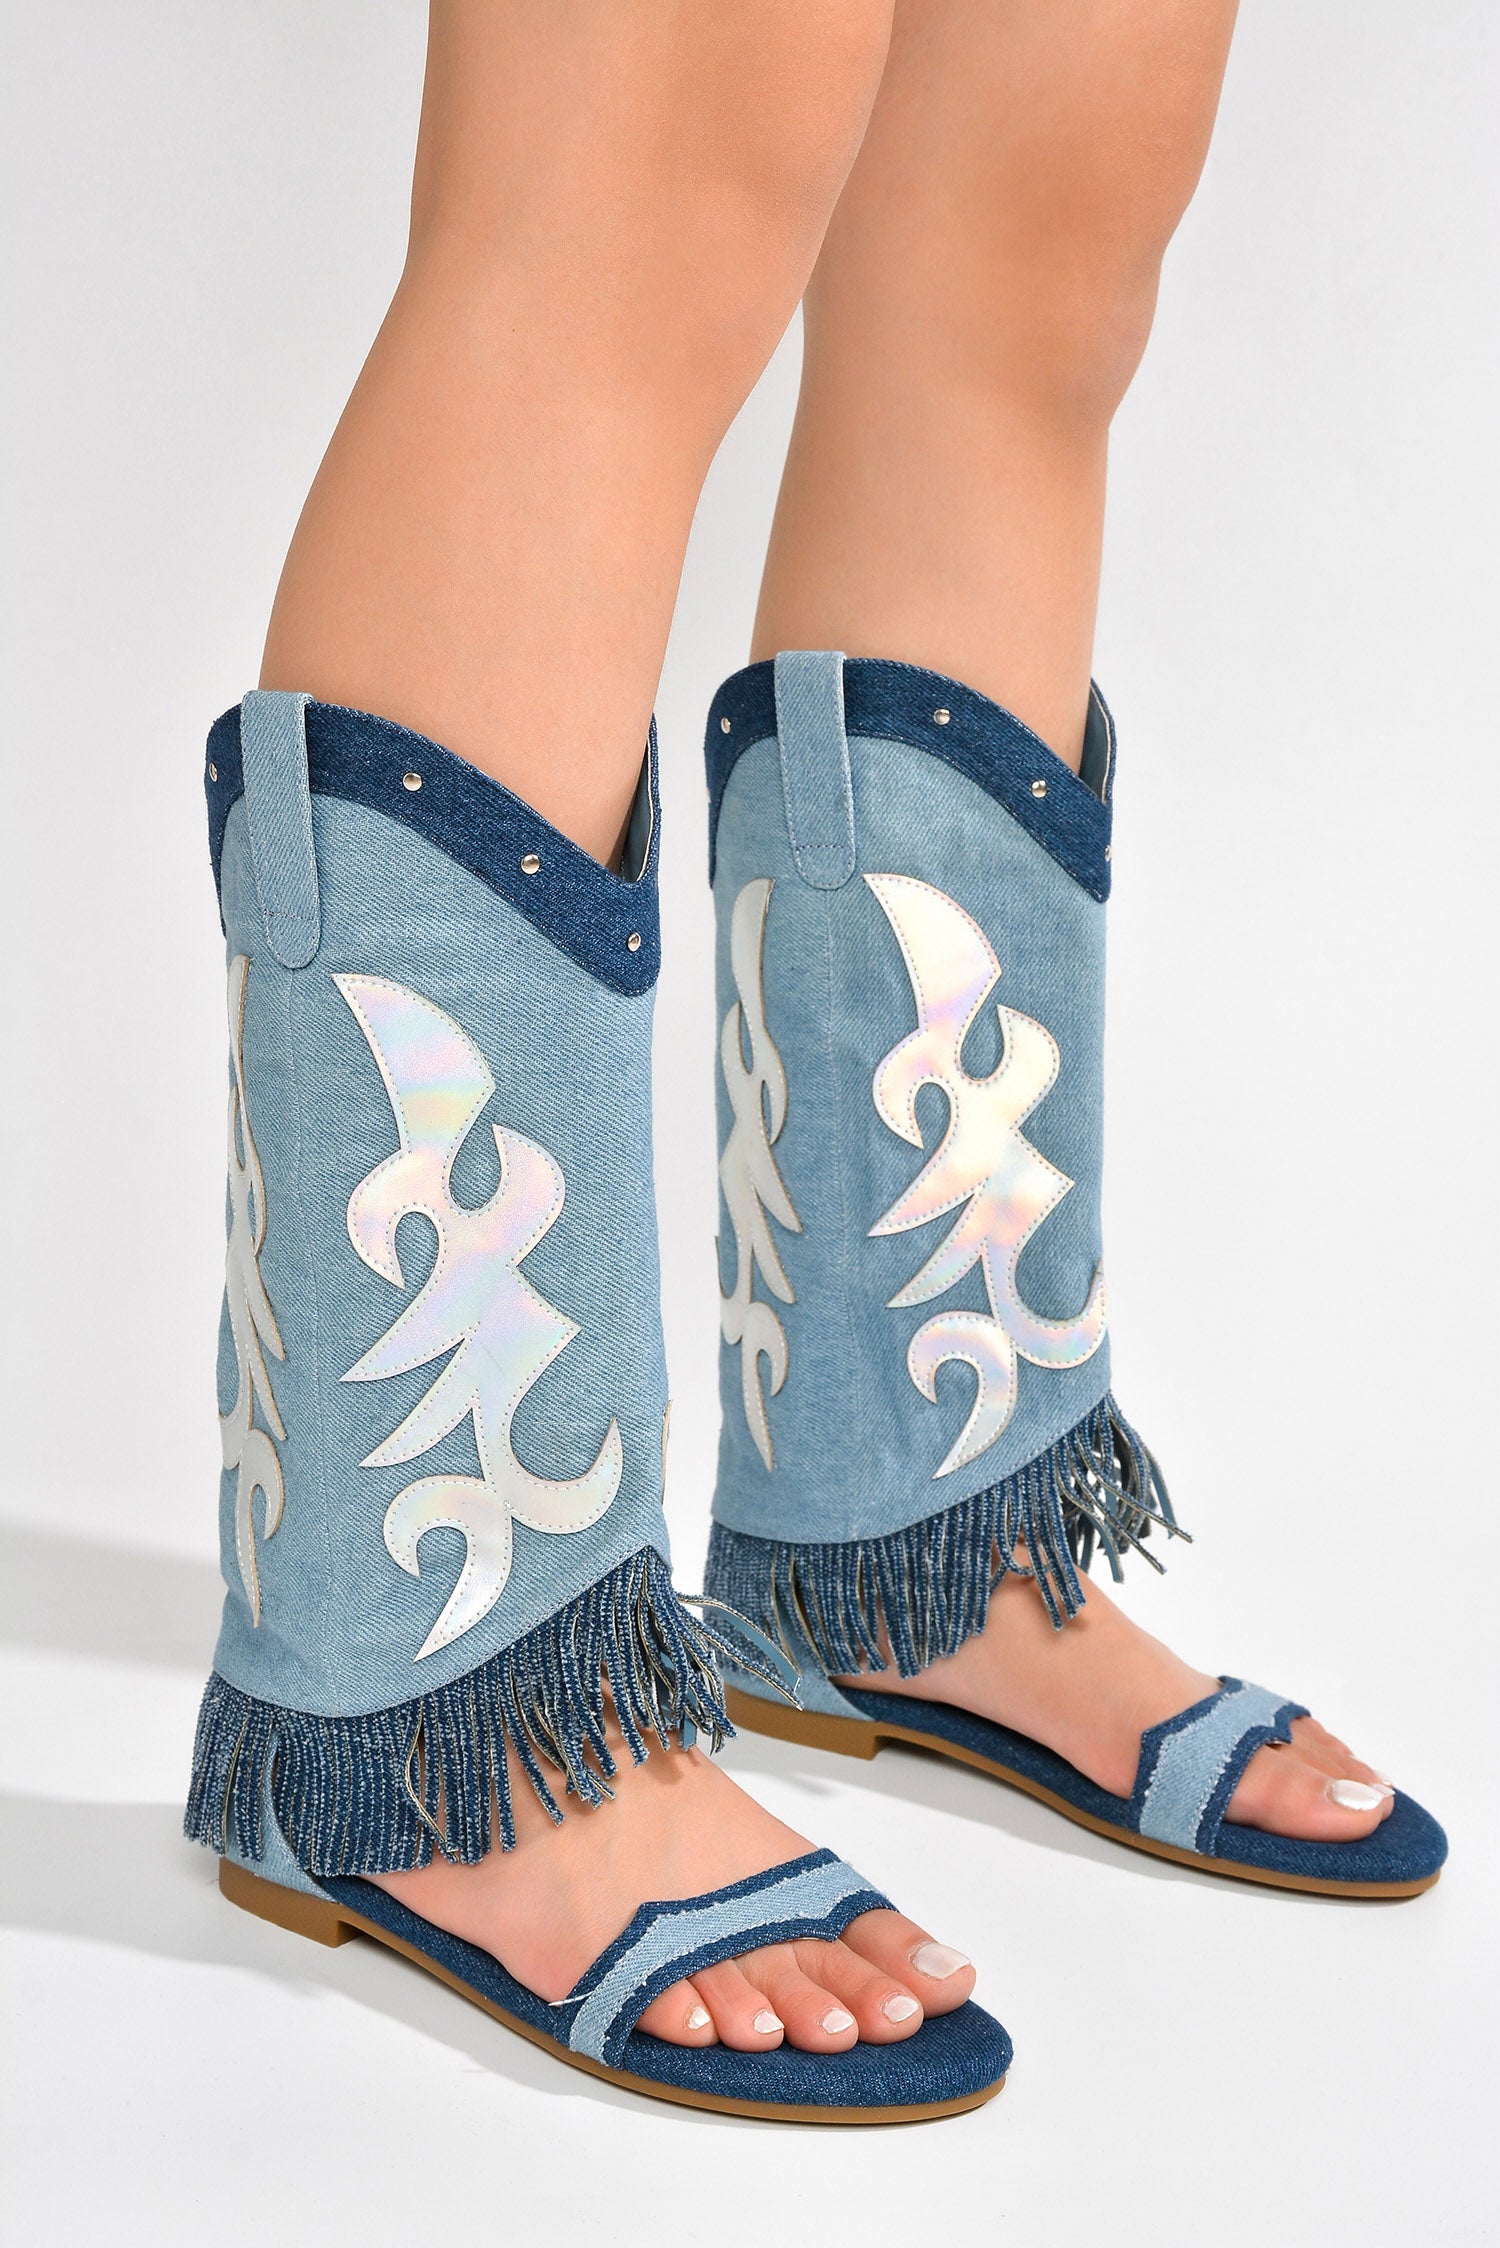 UrbanOG - Collins Fringe Western-Inspired Flat Sandals - SANDALS